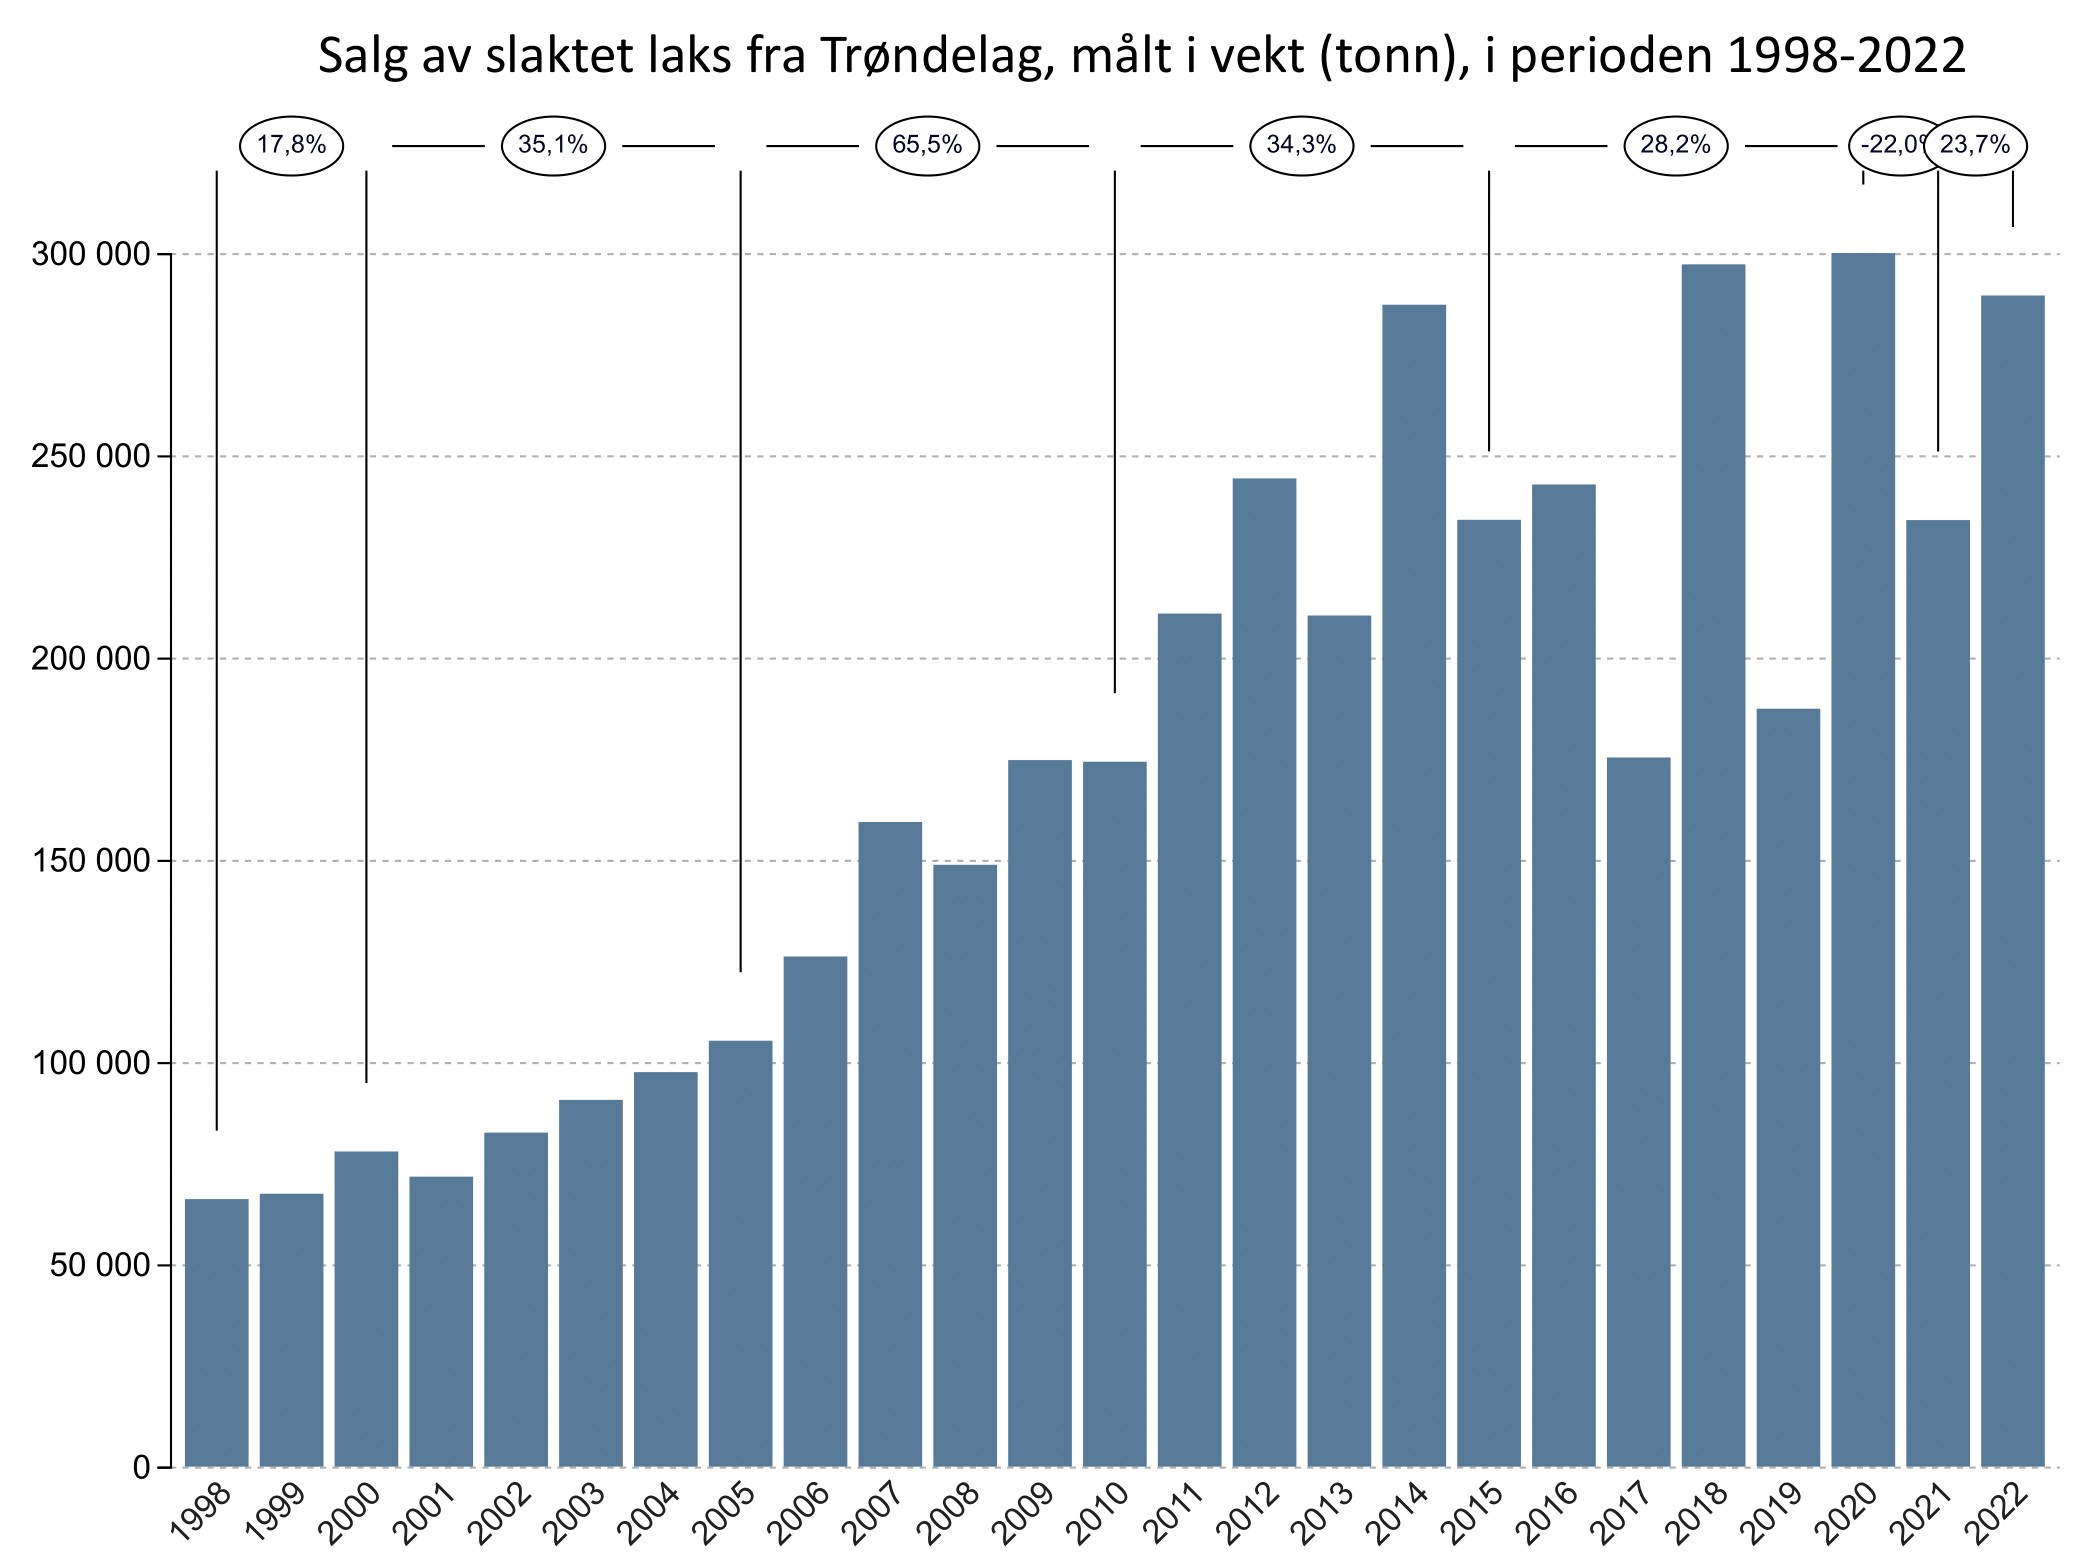 Salg av slaktet laks fra Trøndelag, målt i vekt (tonn), i perioden 1998-2022